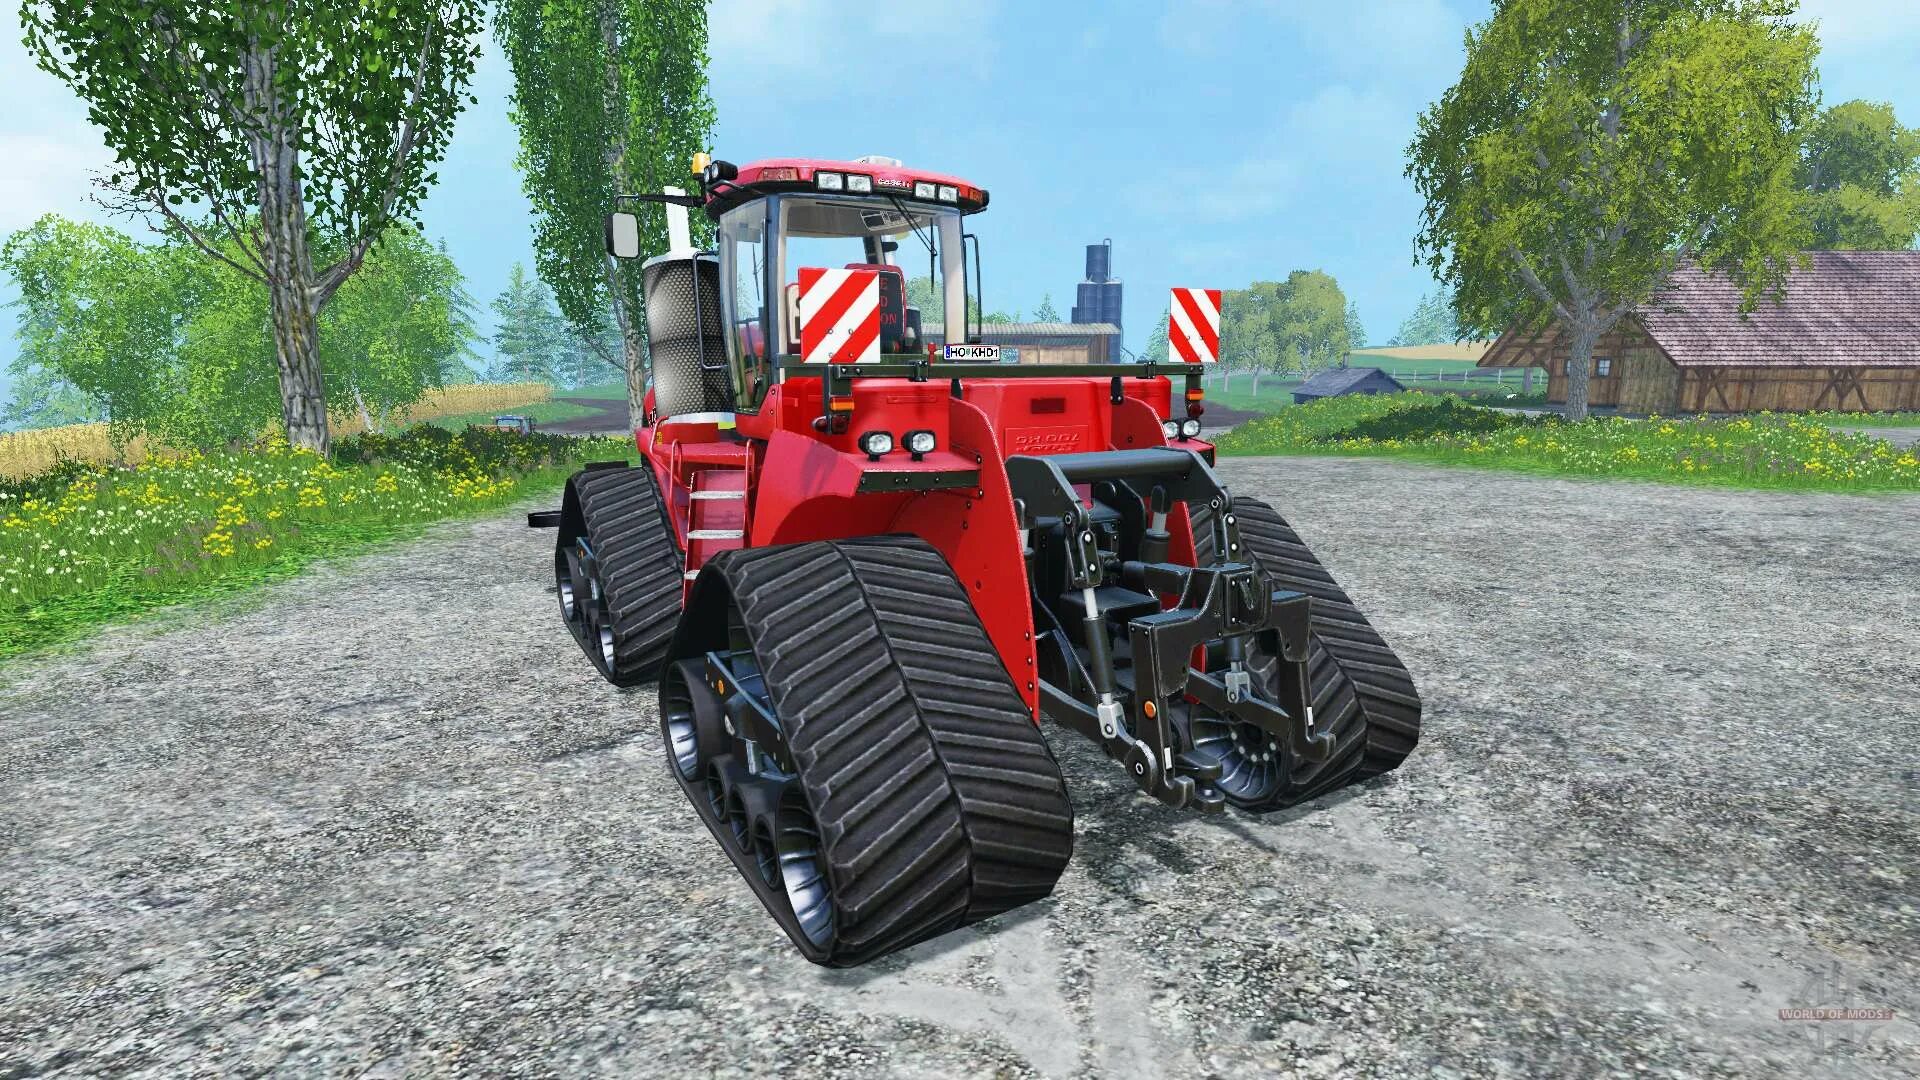 Fs15 гусеничный трактор. Case гусеничные трактора для Farming Simulator 2019. Трактор РСМ для ФС 15. Фс19 трактор Case. Игры гусеничные трактора